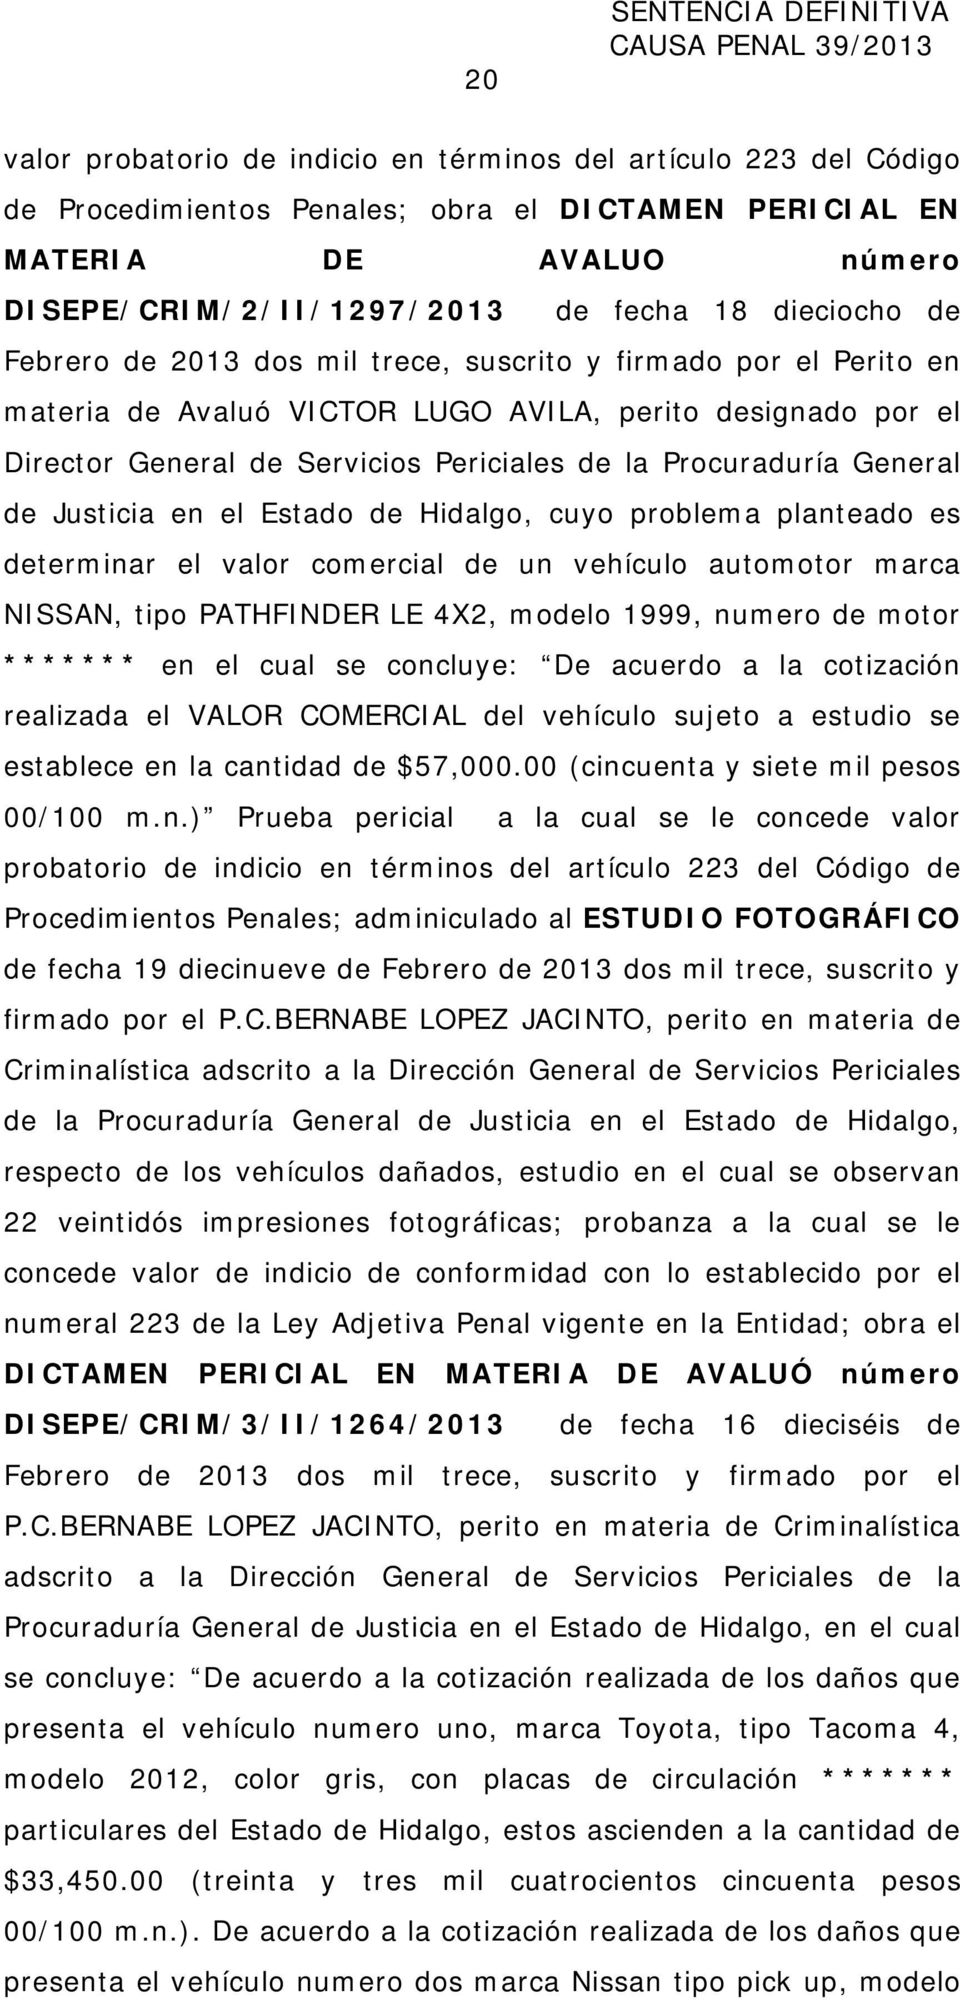 Procuraduría General de Justicia en el Estado de Hidalgo, cuyo problema planteado es determinar el valor comercial de un vehículo automotor marca NISSAN, tipo PATHFINDER LE 4X2, modelo 1999, numero